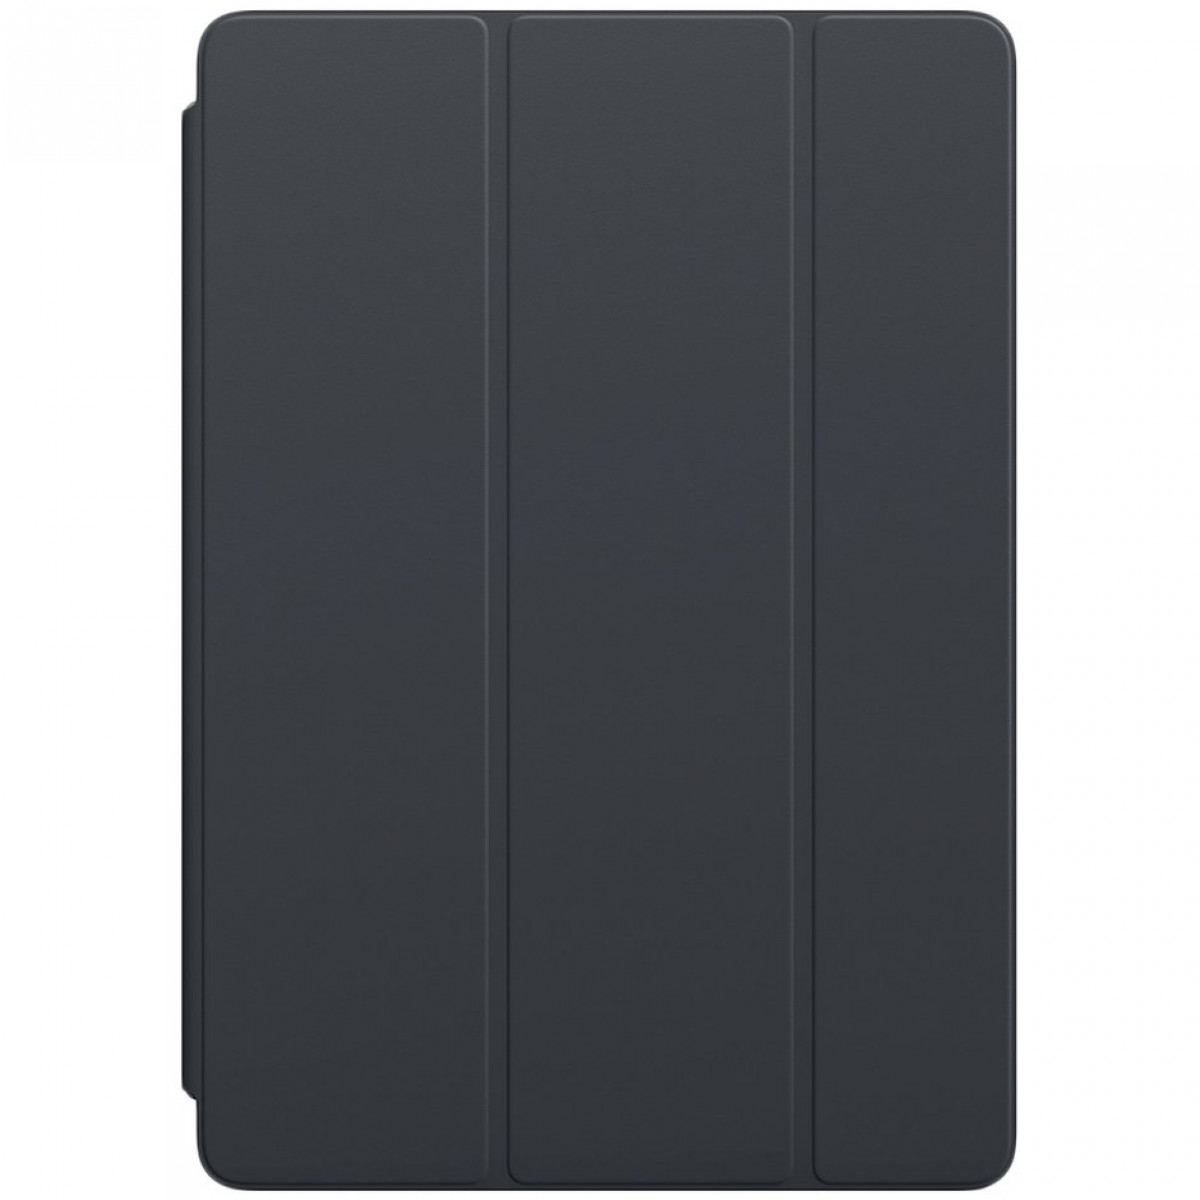 Обложка Smart Cover для iPad 9,7 дюйма — угольно-серая